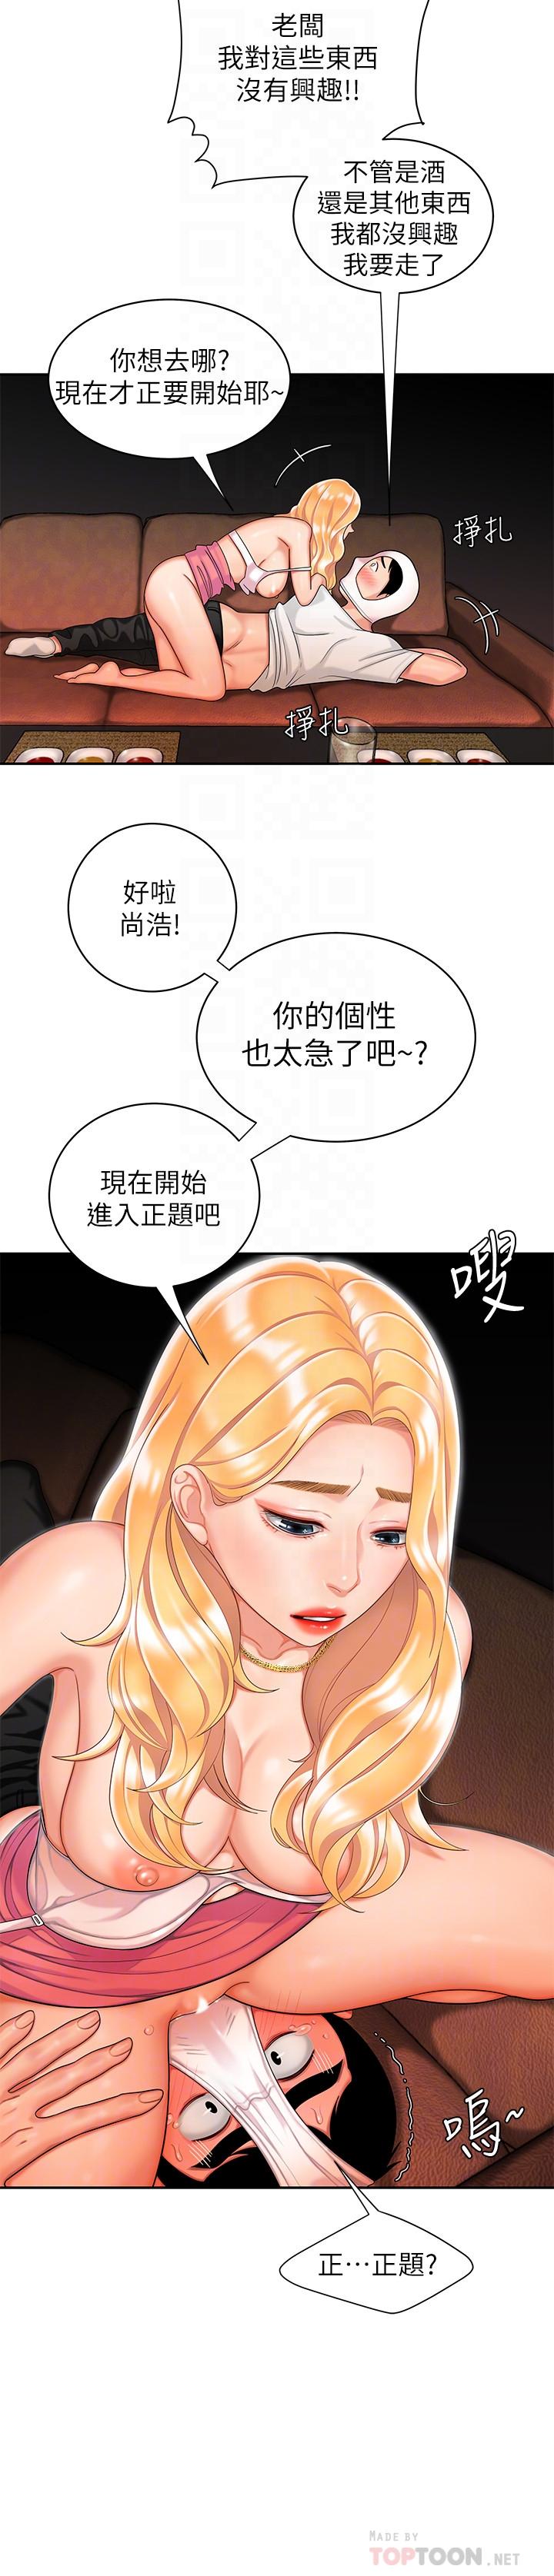 韩国污漫画 幸福外送員 第12话-炸鸡店老板不间断的诱惑 6